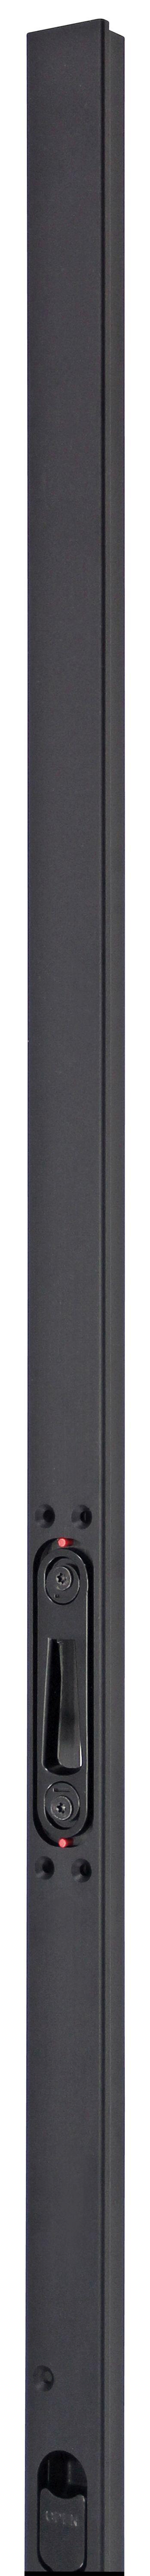 Multipoint Deluxe Inbouw Noir (Serie 004, 006, 51 en 52) | SKG3 Deurnaald | Deurhoogte 1950-2300 mm